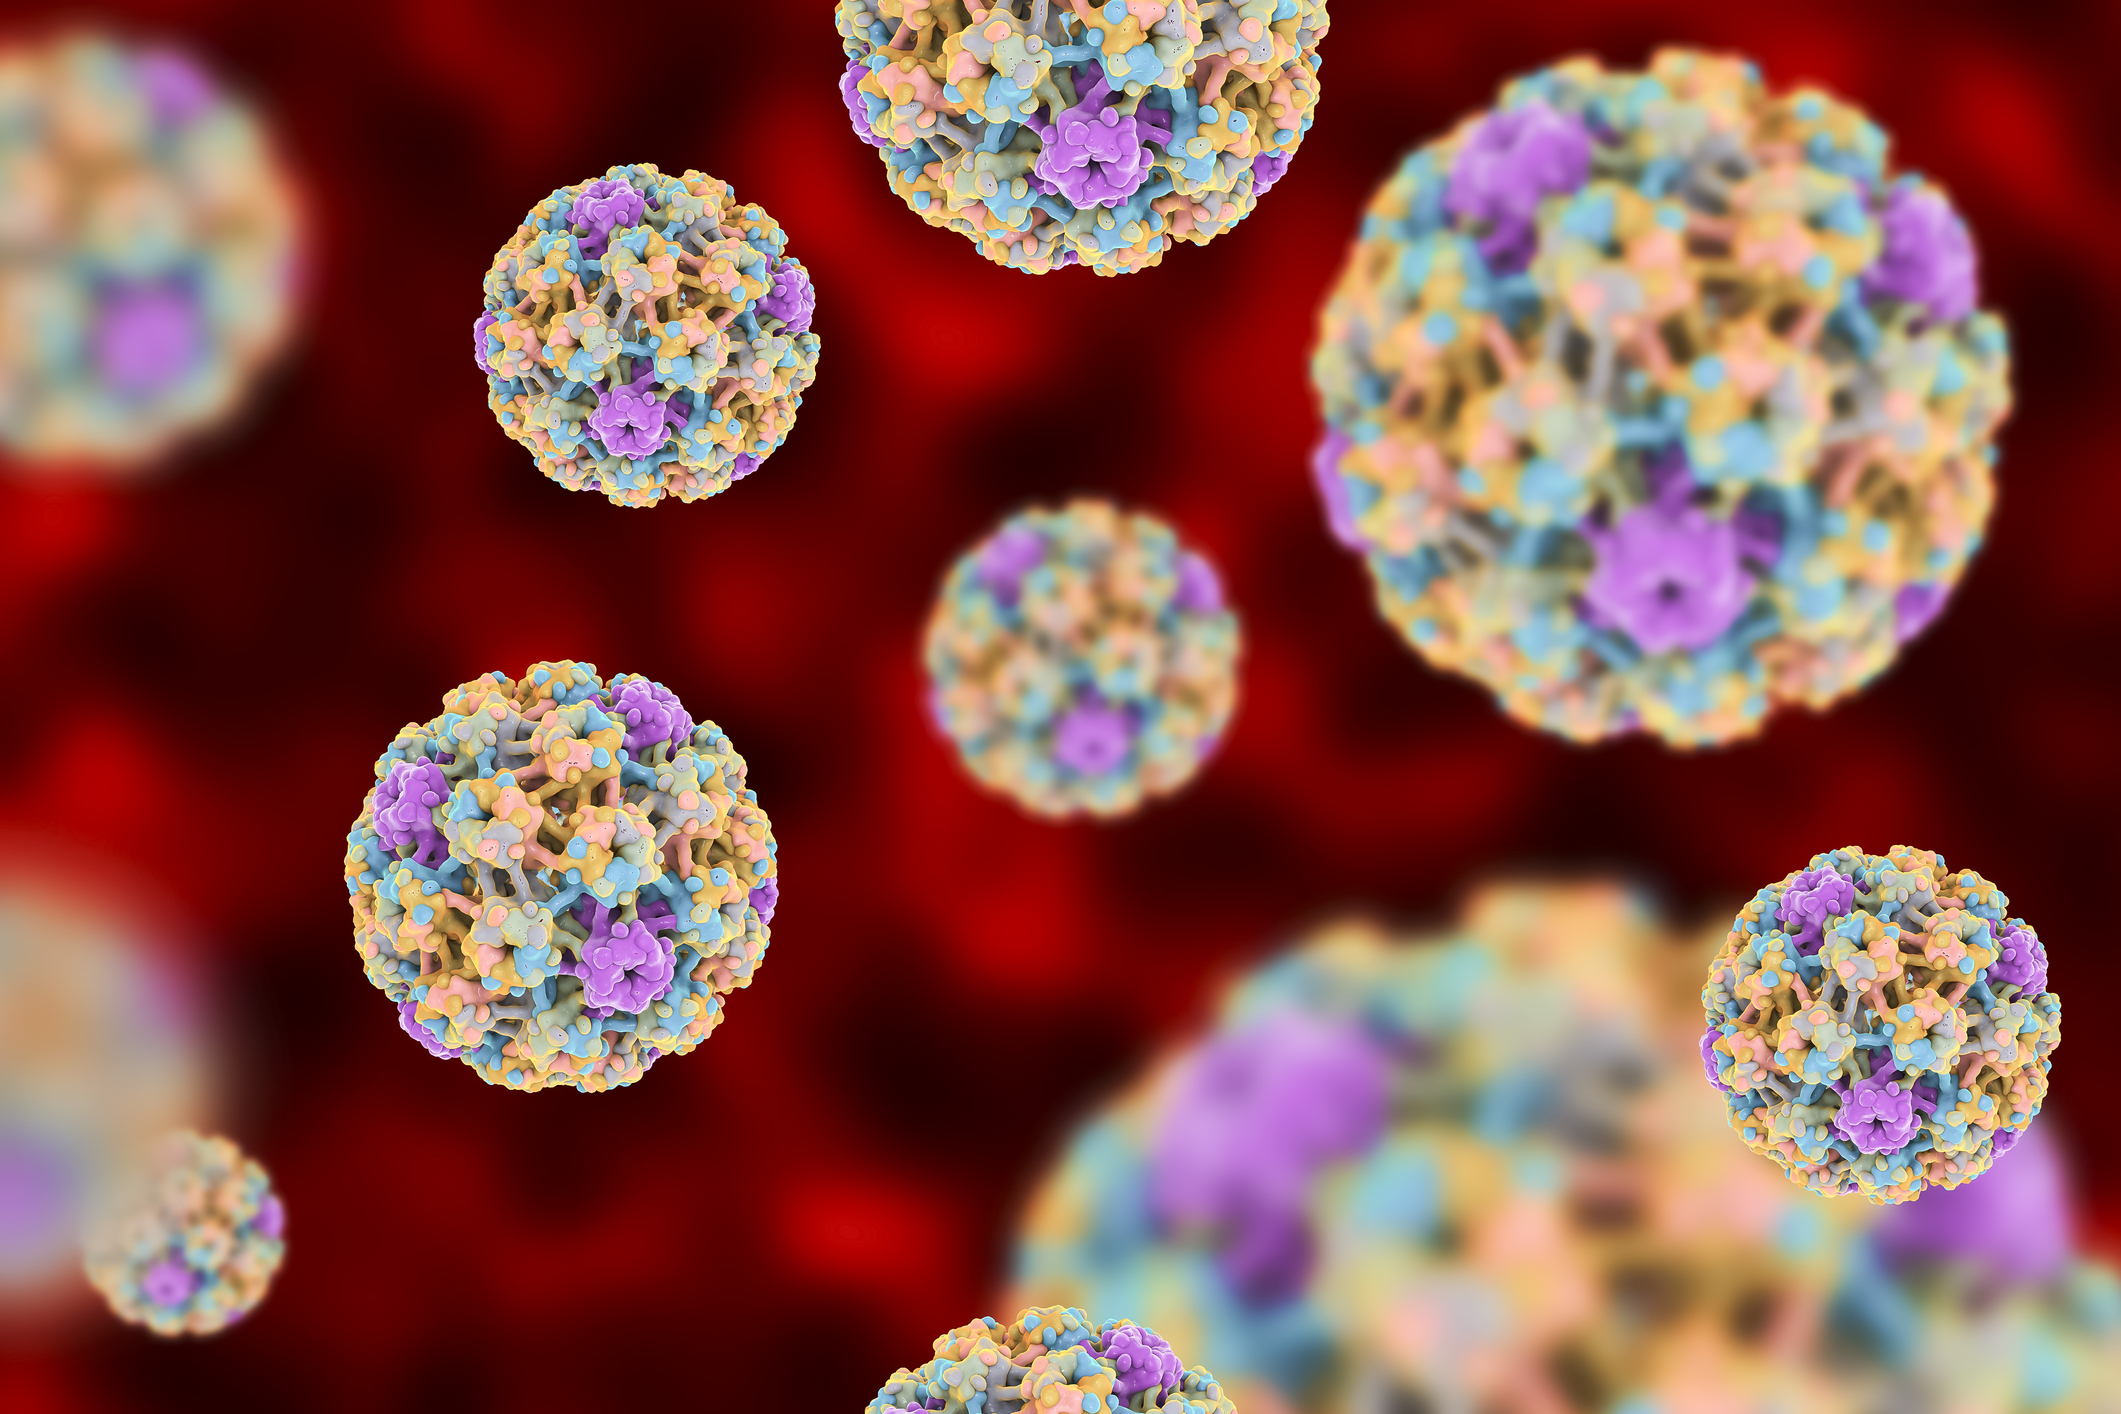 Esito negativo papilloma virus - Hpv ceppi ad alto rischio oncogeno